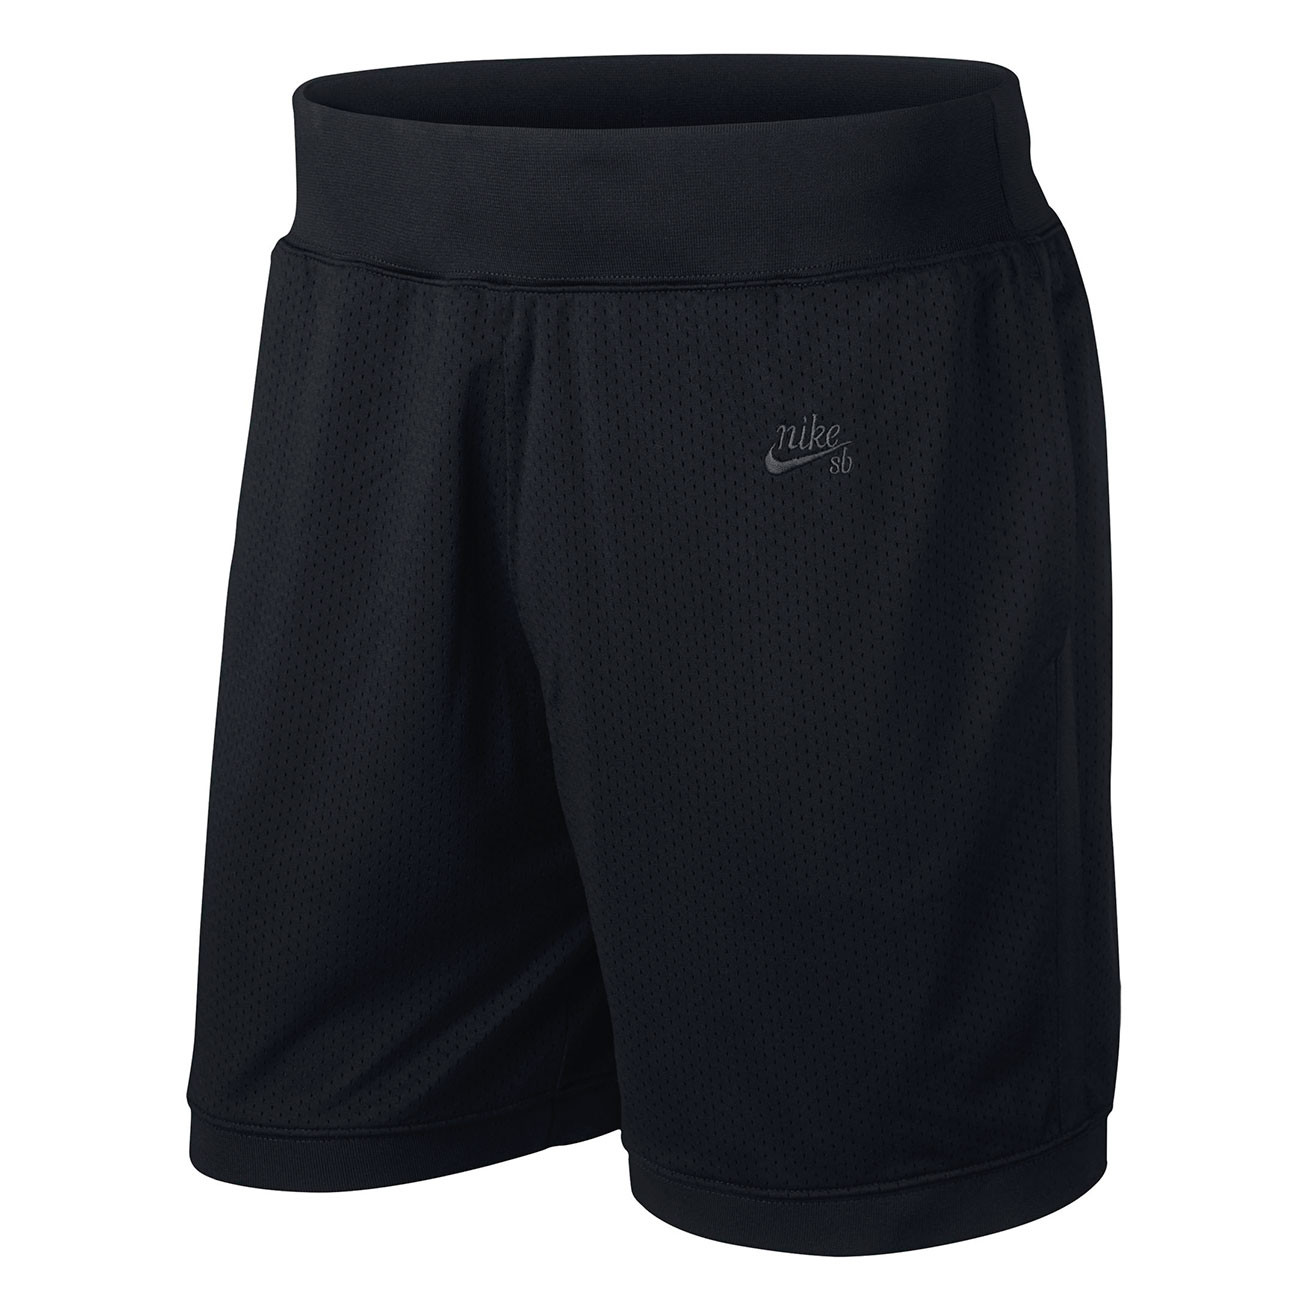 nike sb court shorts